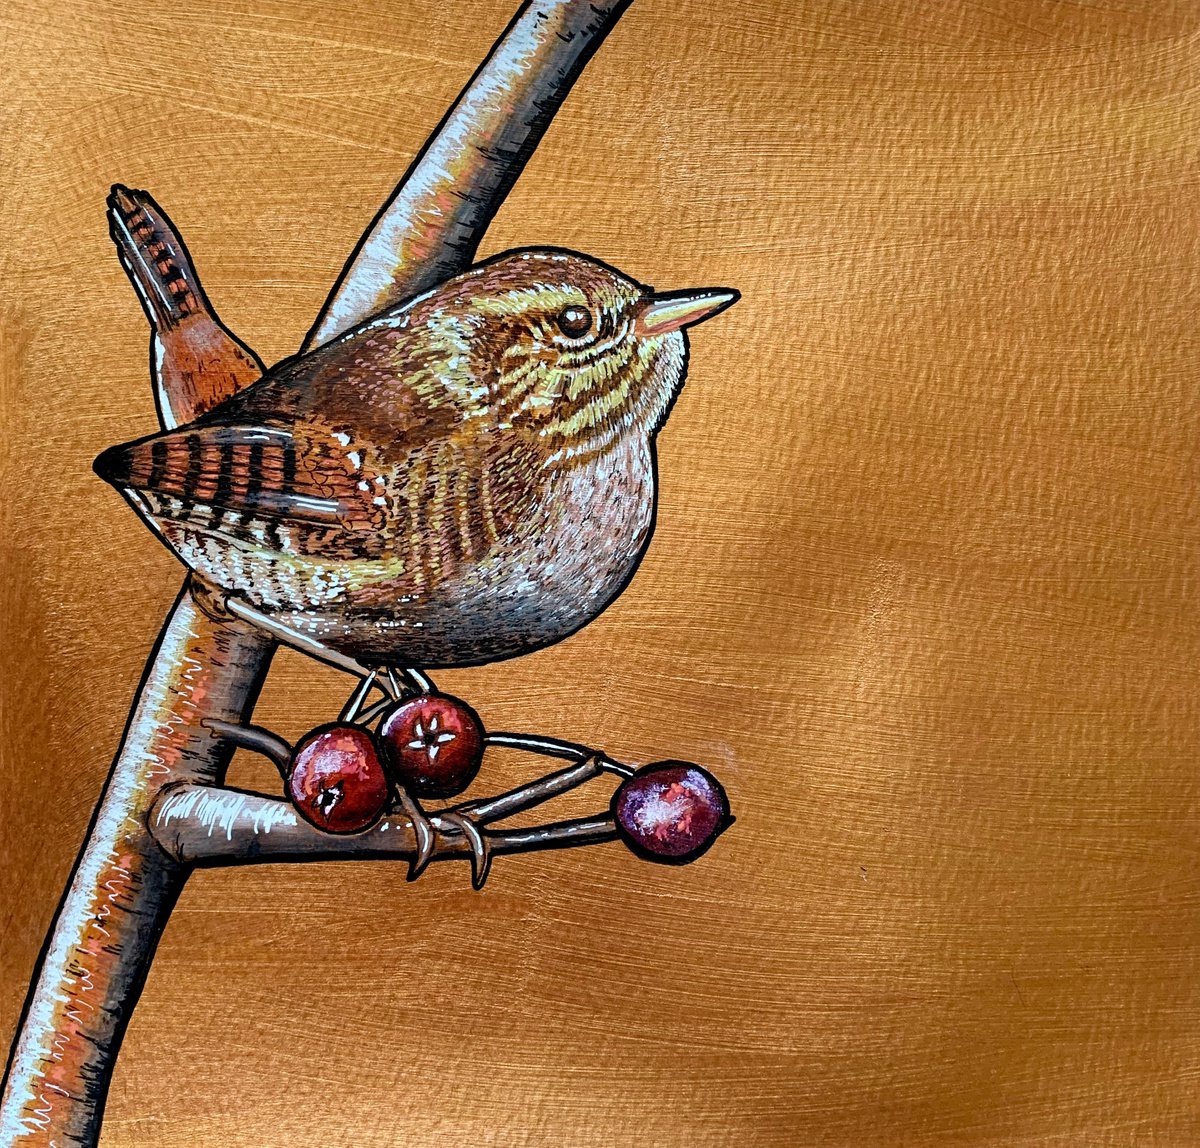 British Garden Birds series - Wren by Karen Elaine Evans